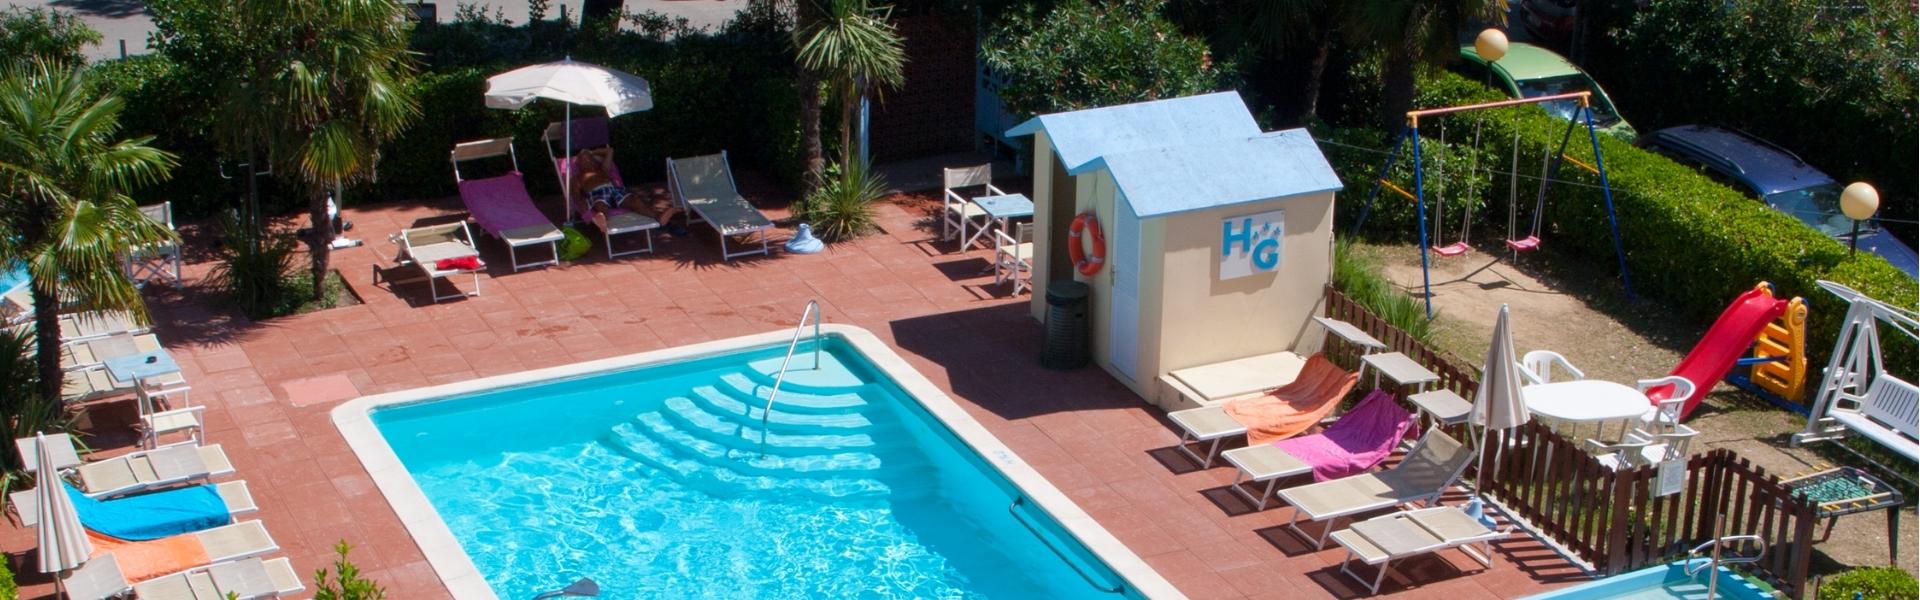 hotelgaudia en swimming-pool 011